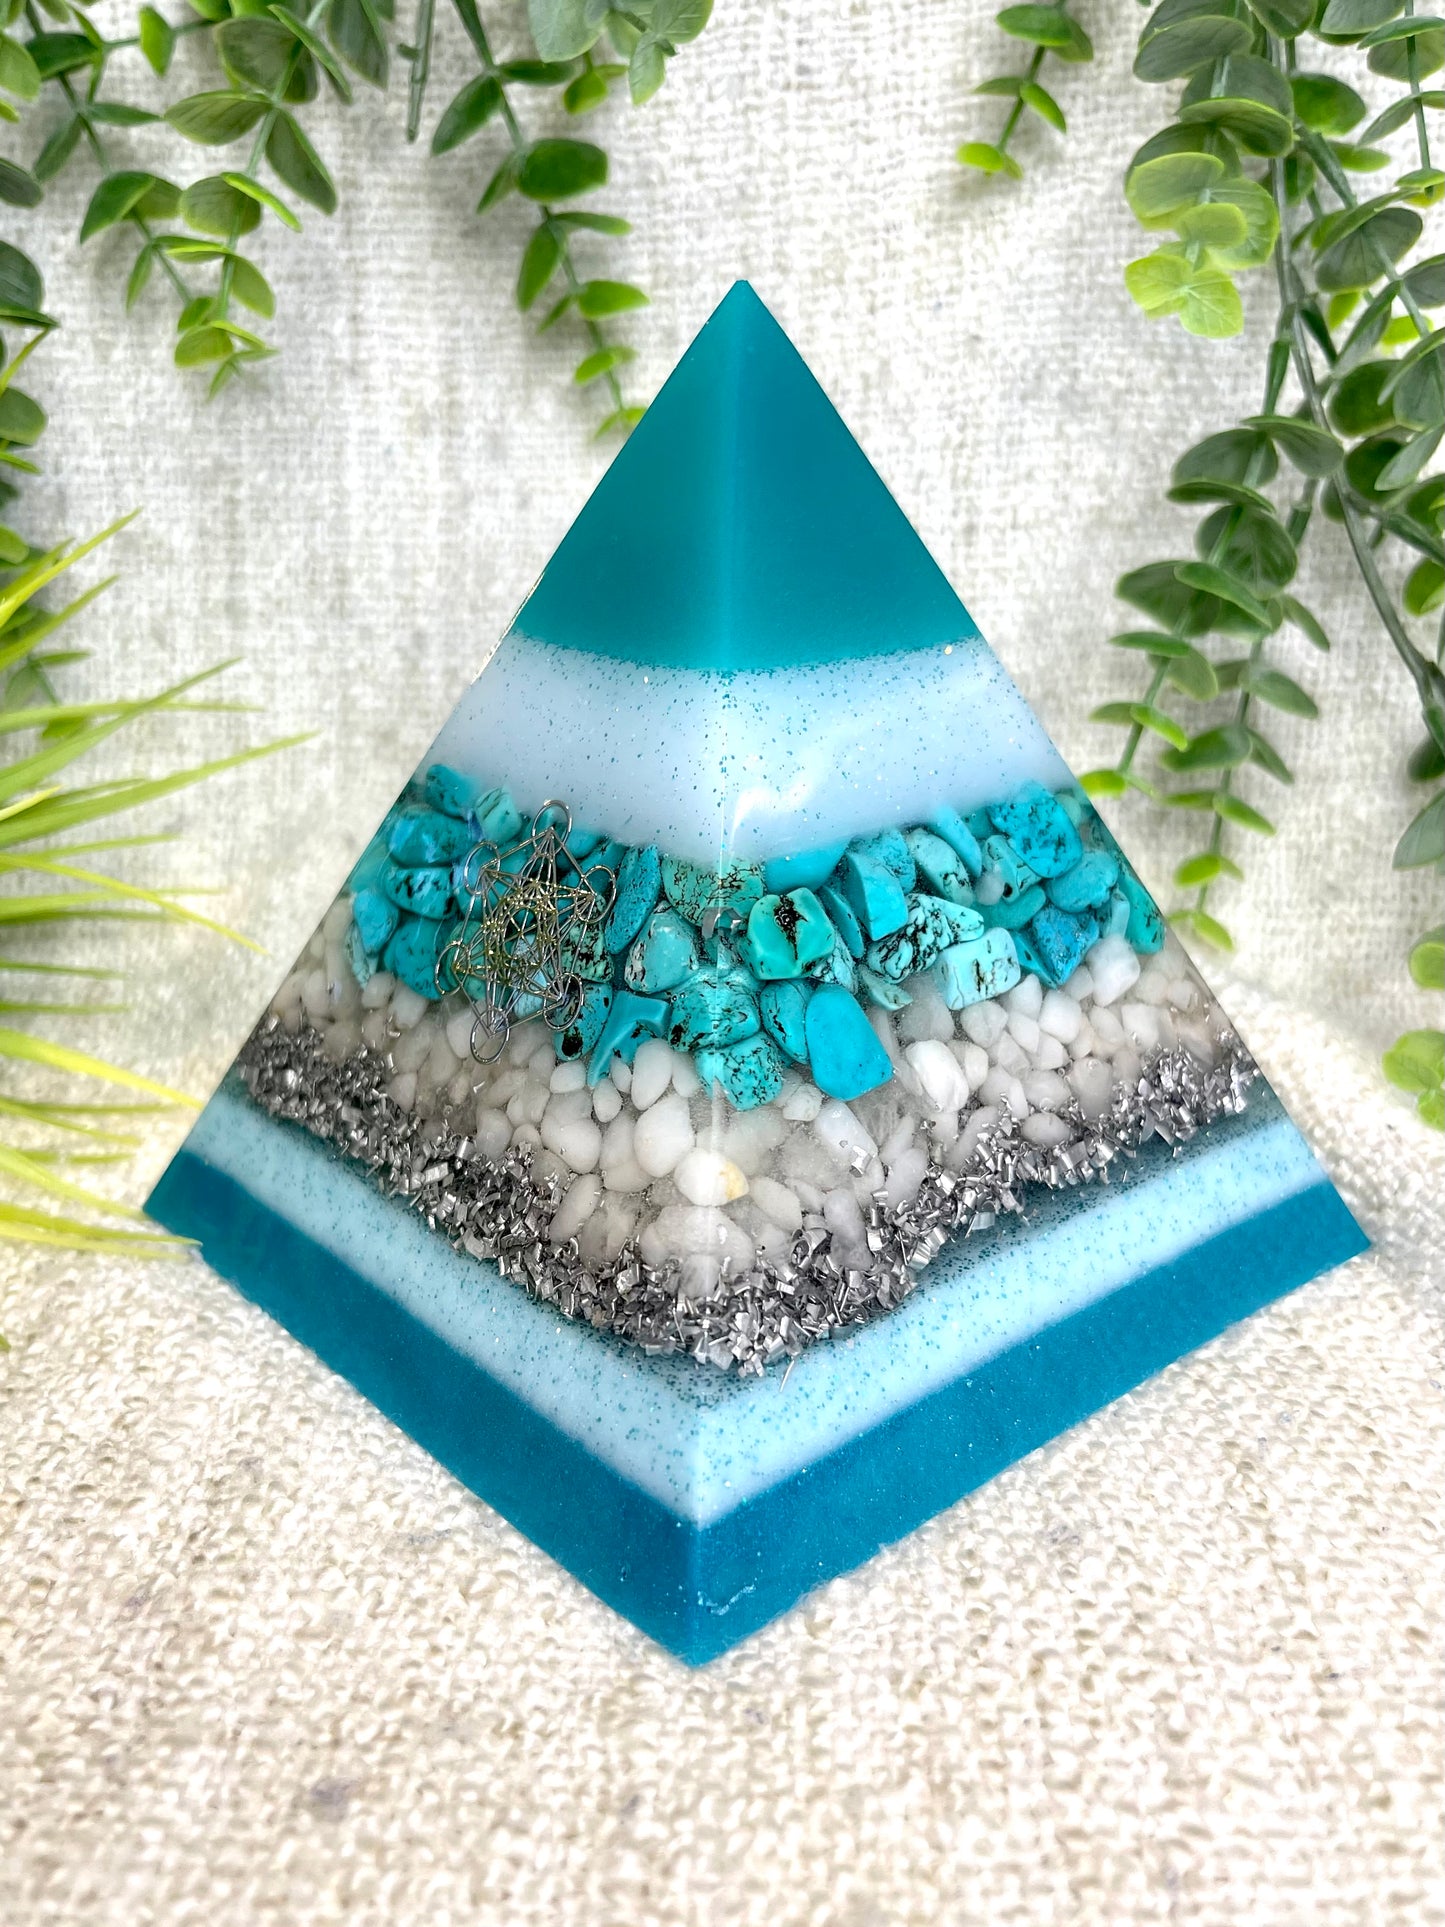 GABRIELA - Orgonite Pyramid - EMF Protector - Turquoise, White Milky Quartz and Aluminum Metals